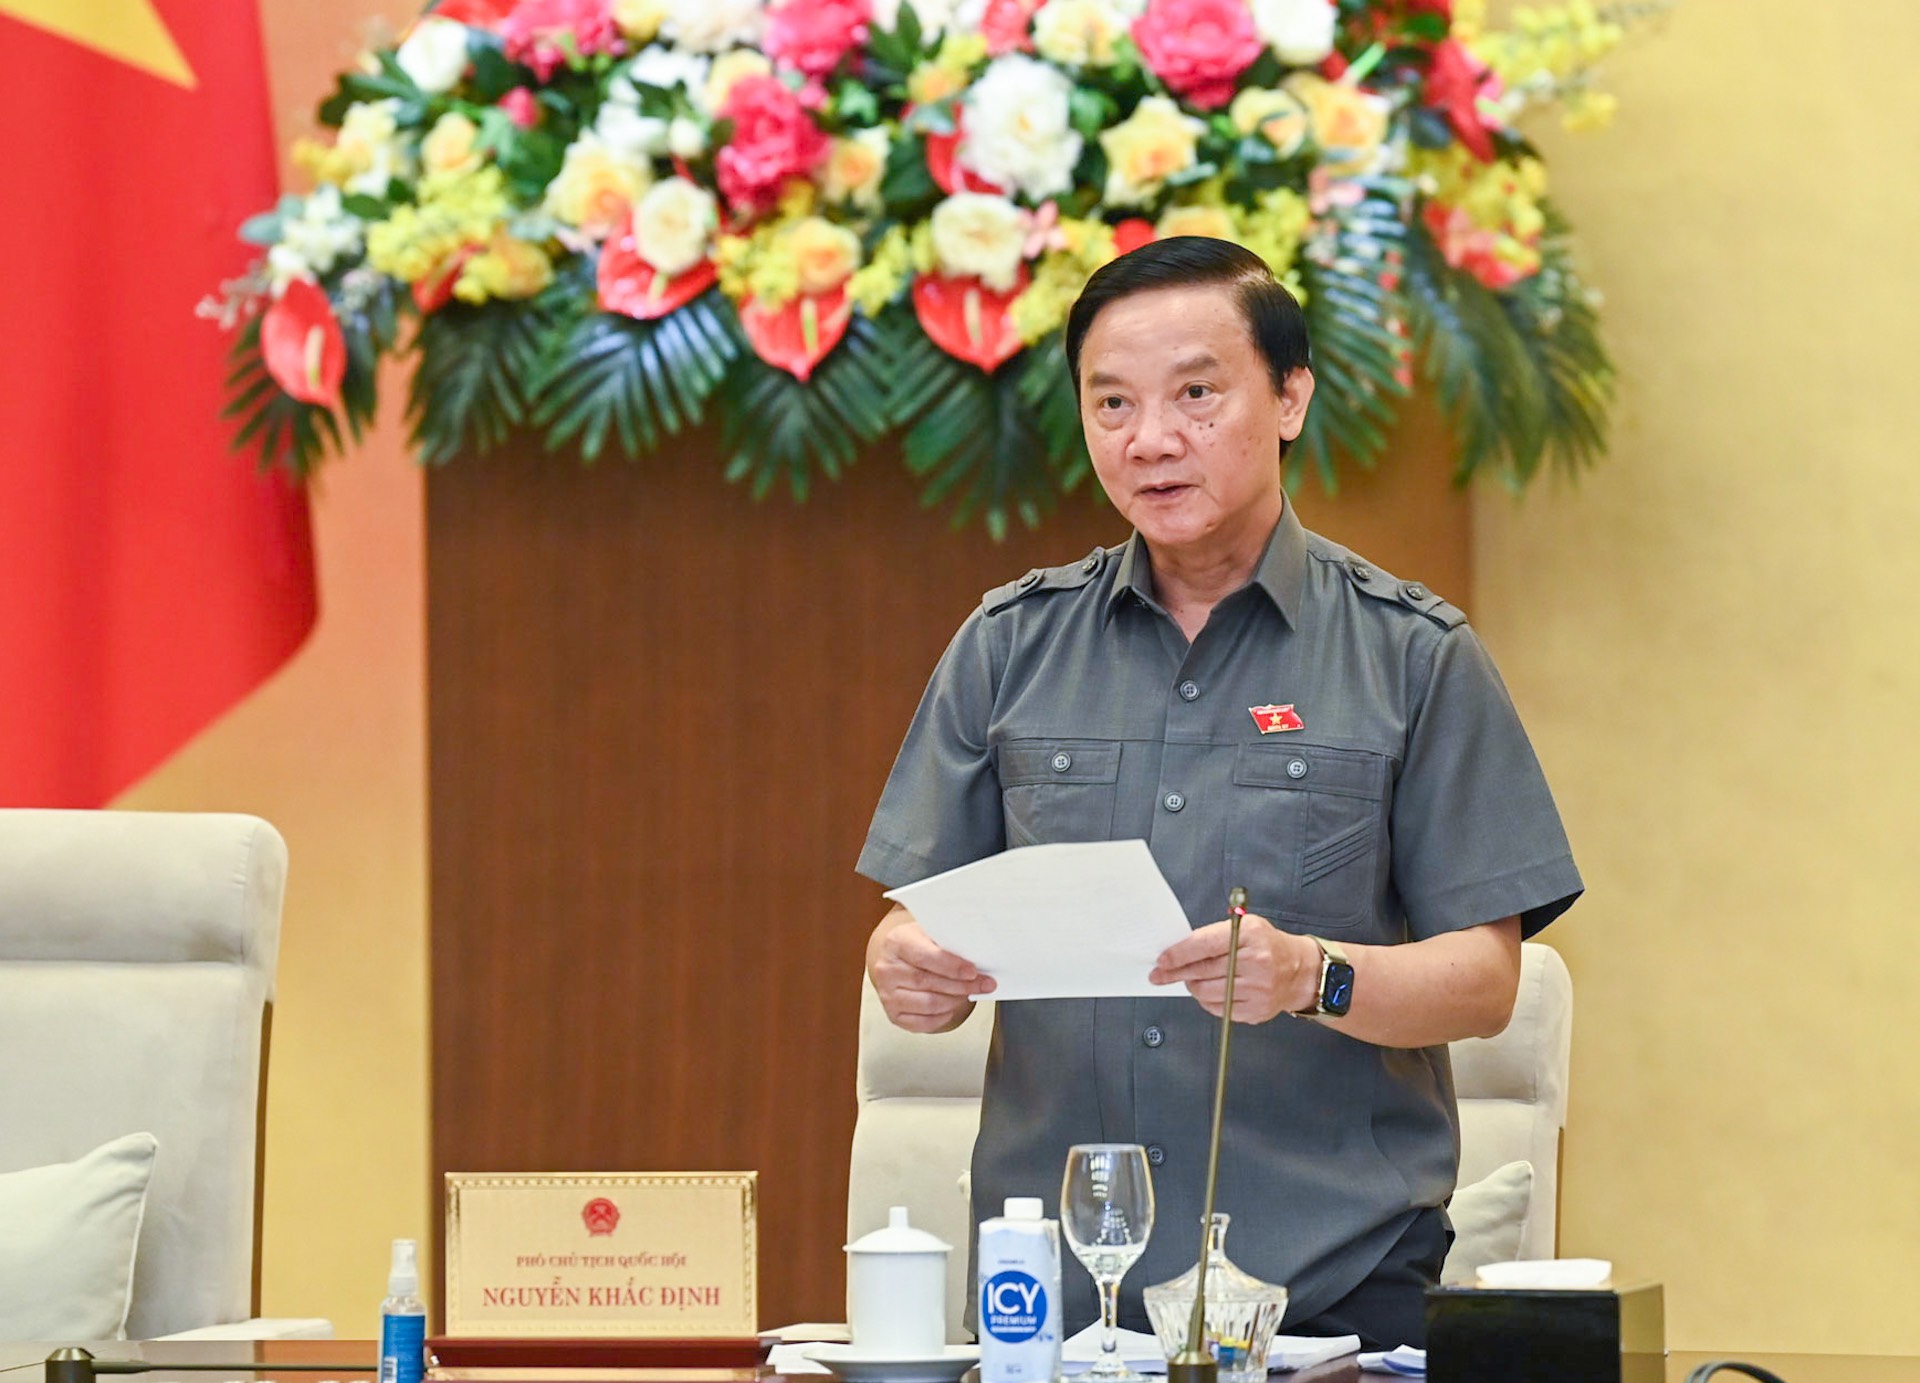 Phó Chủ tịch Quốc hội Nguyễn Khắc Định phát biểu. Ảnh: Phạm Đông